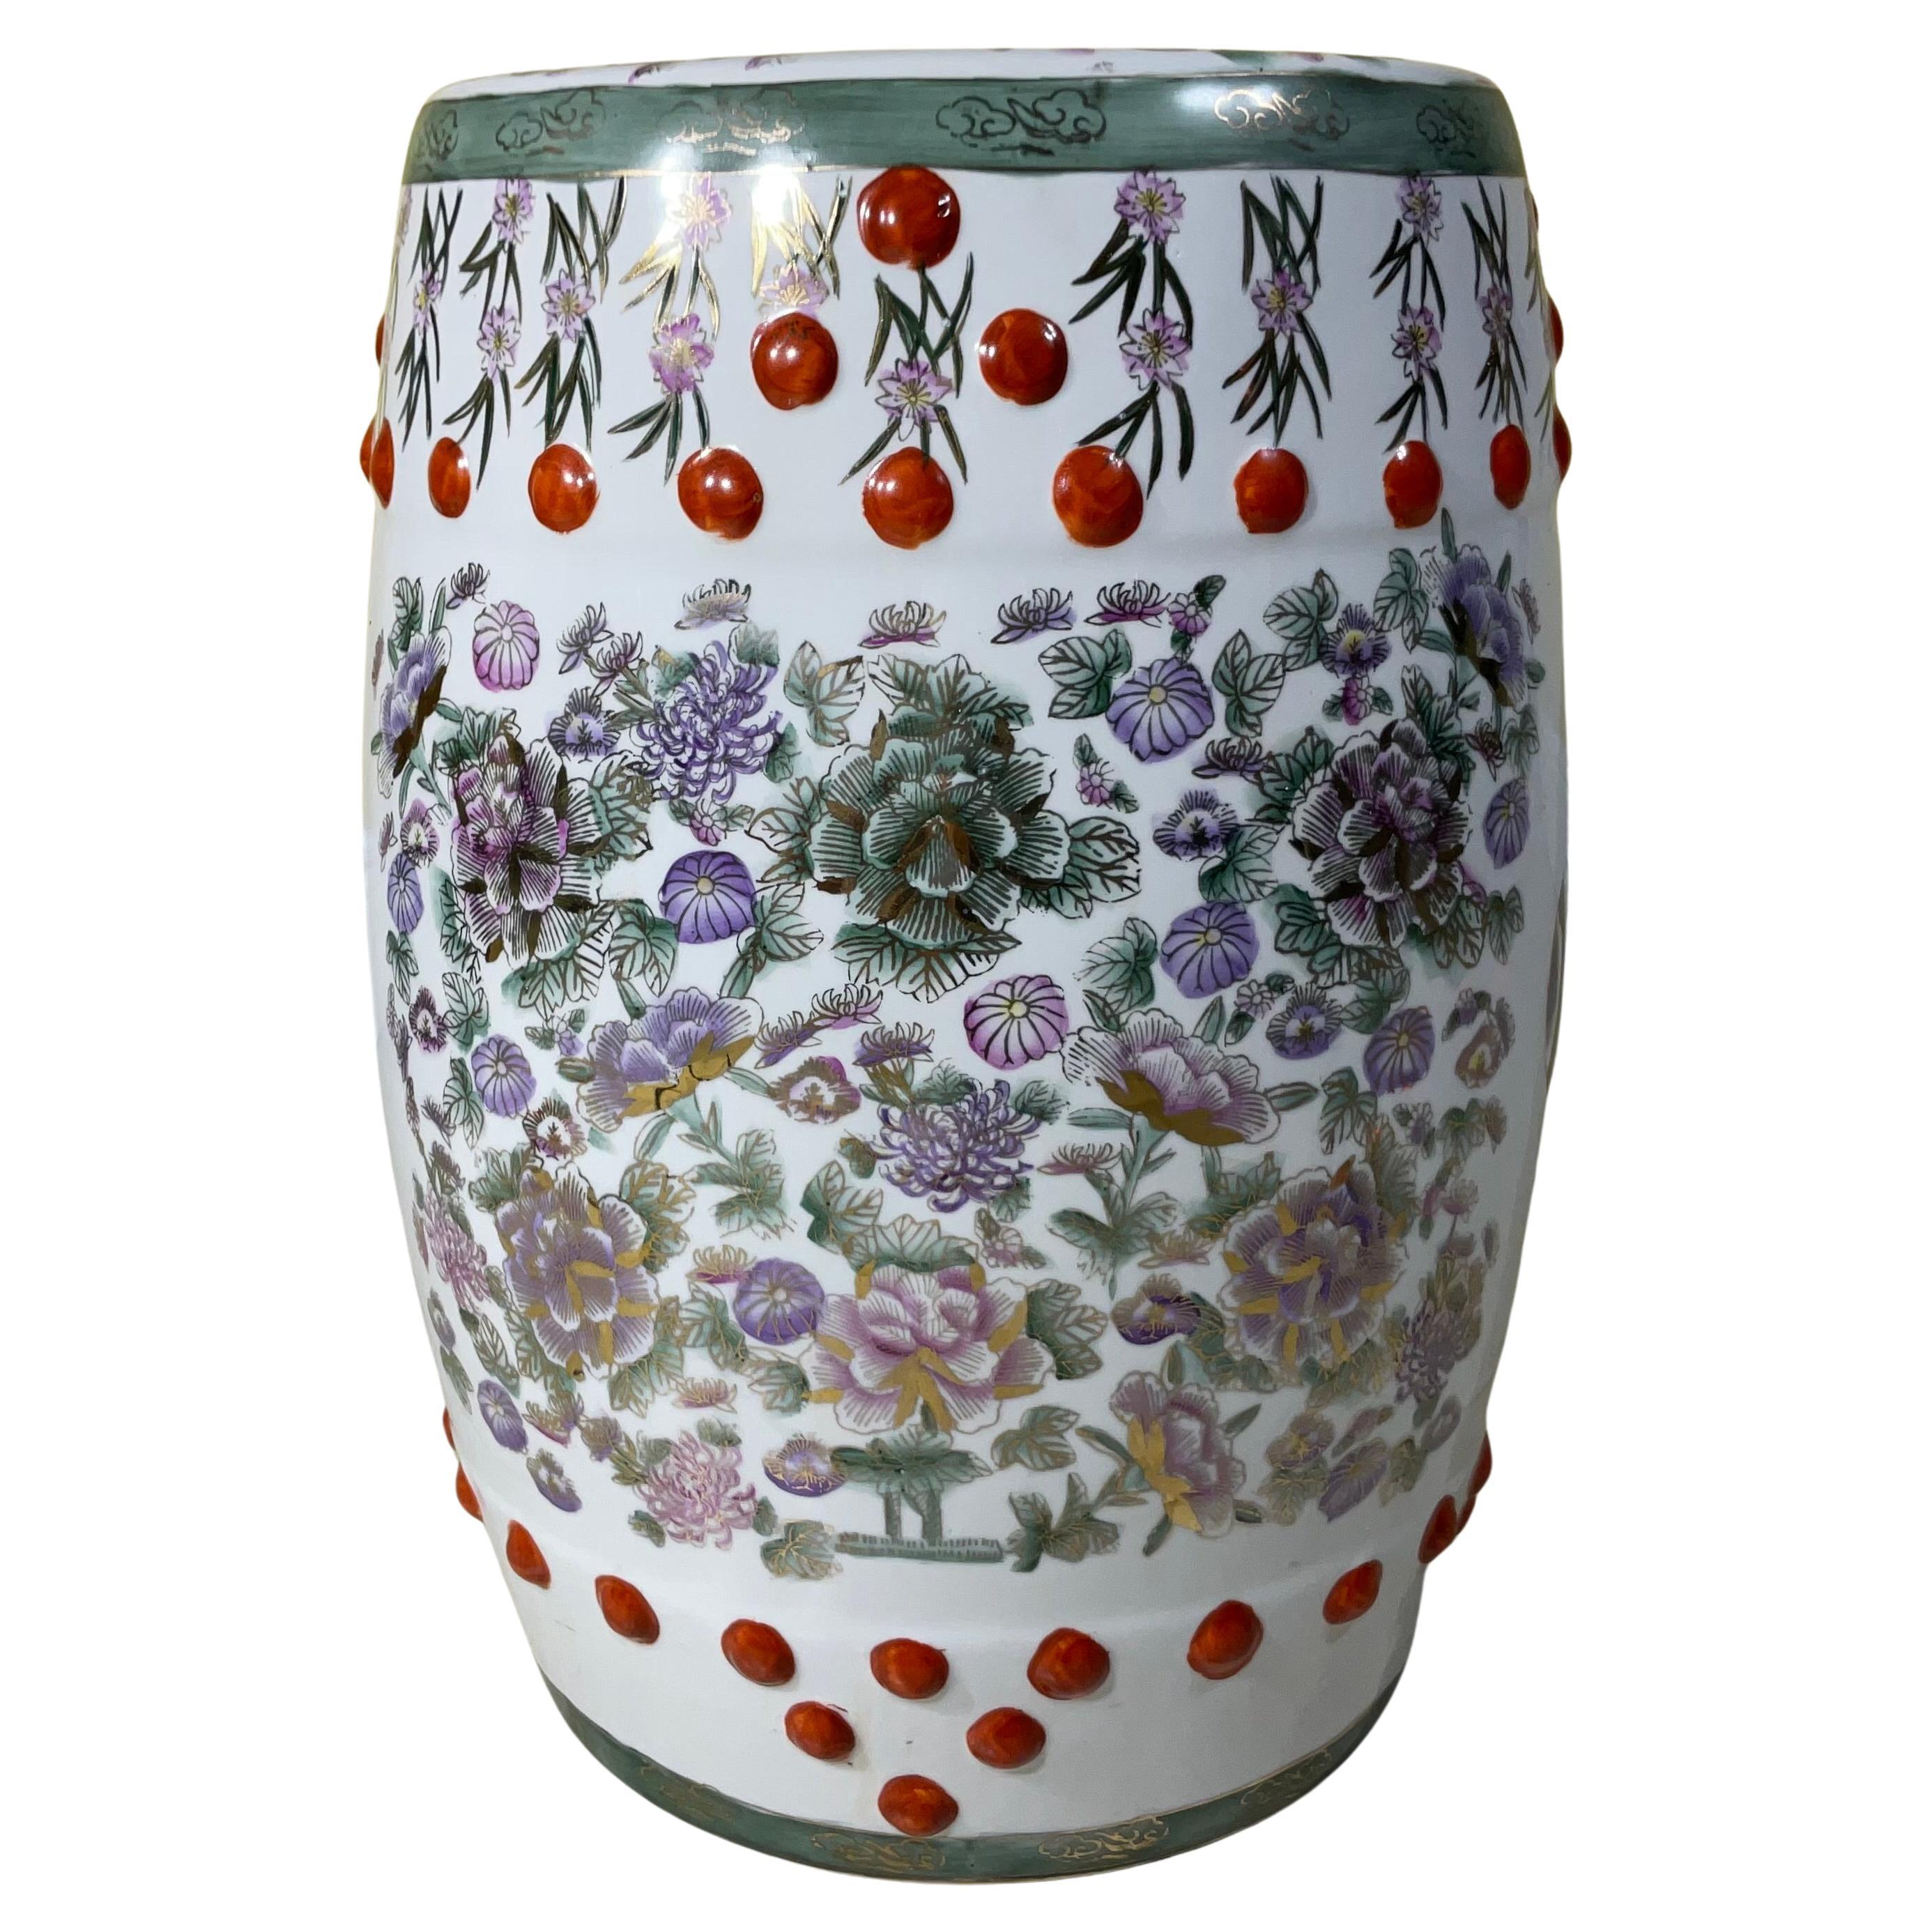 Chinesischer Gartenhocker aus Keramik im Vintage-Stil